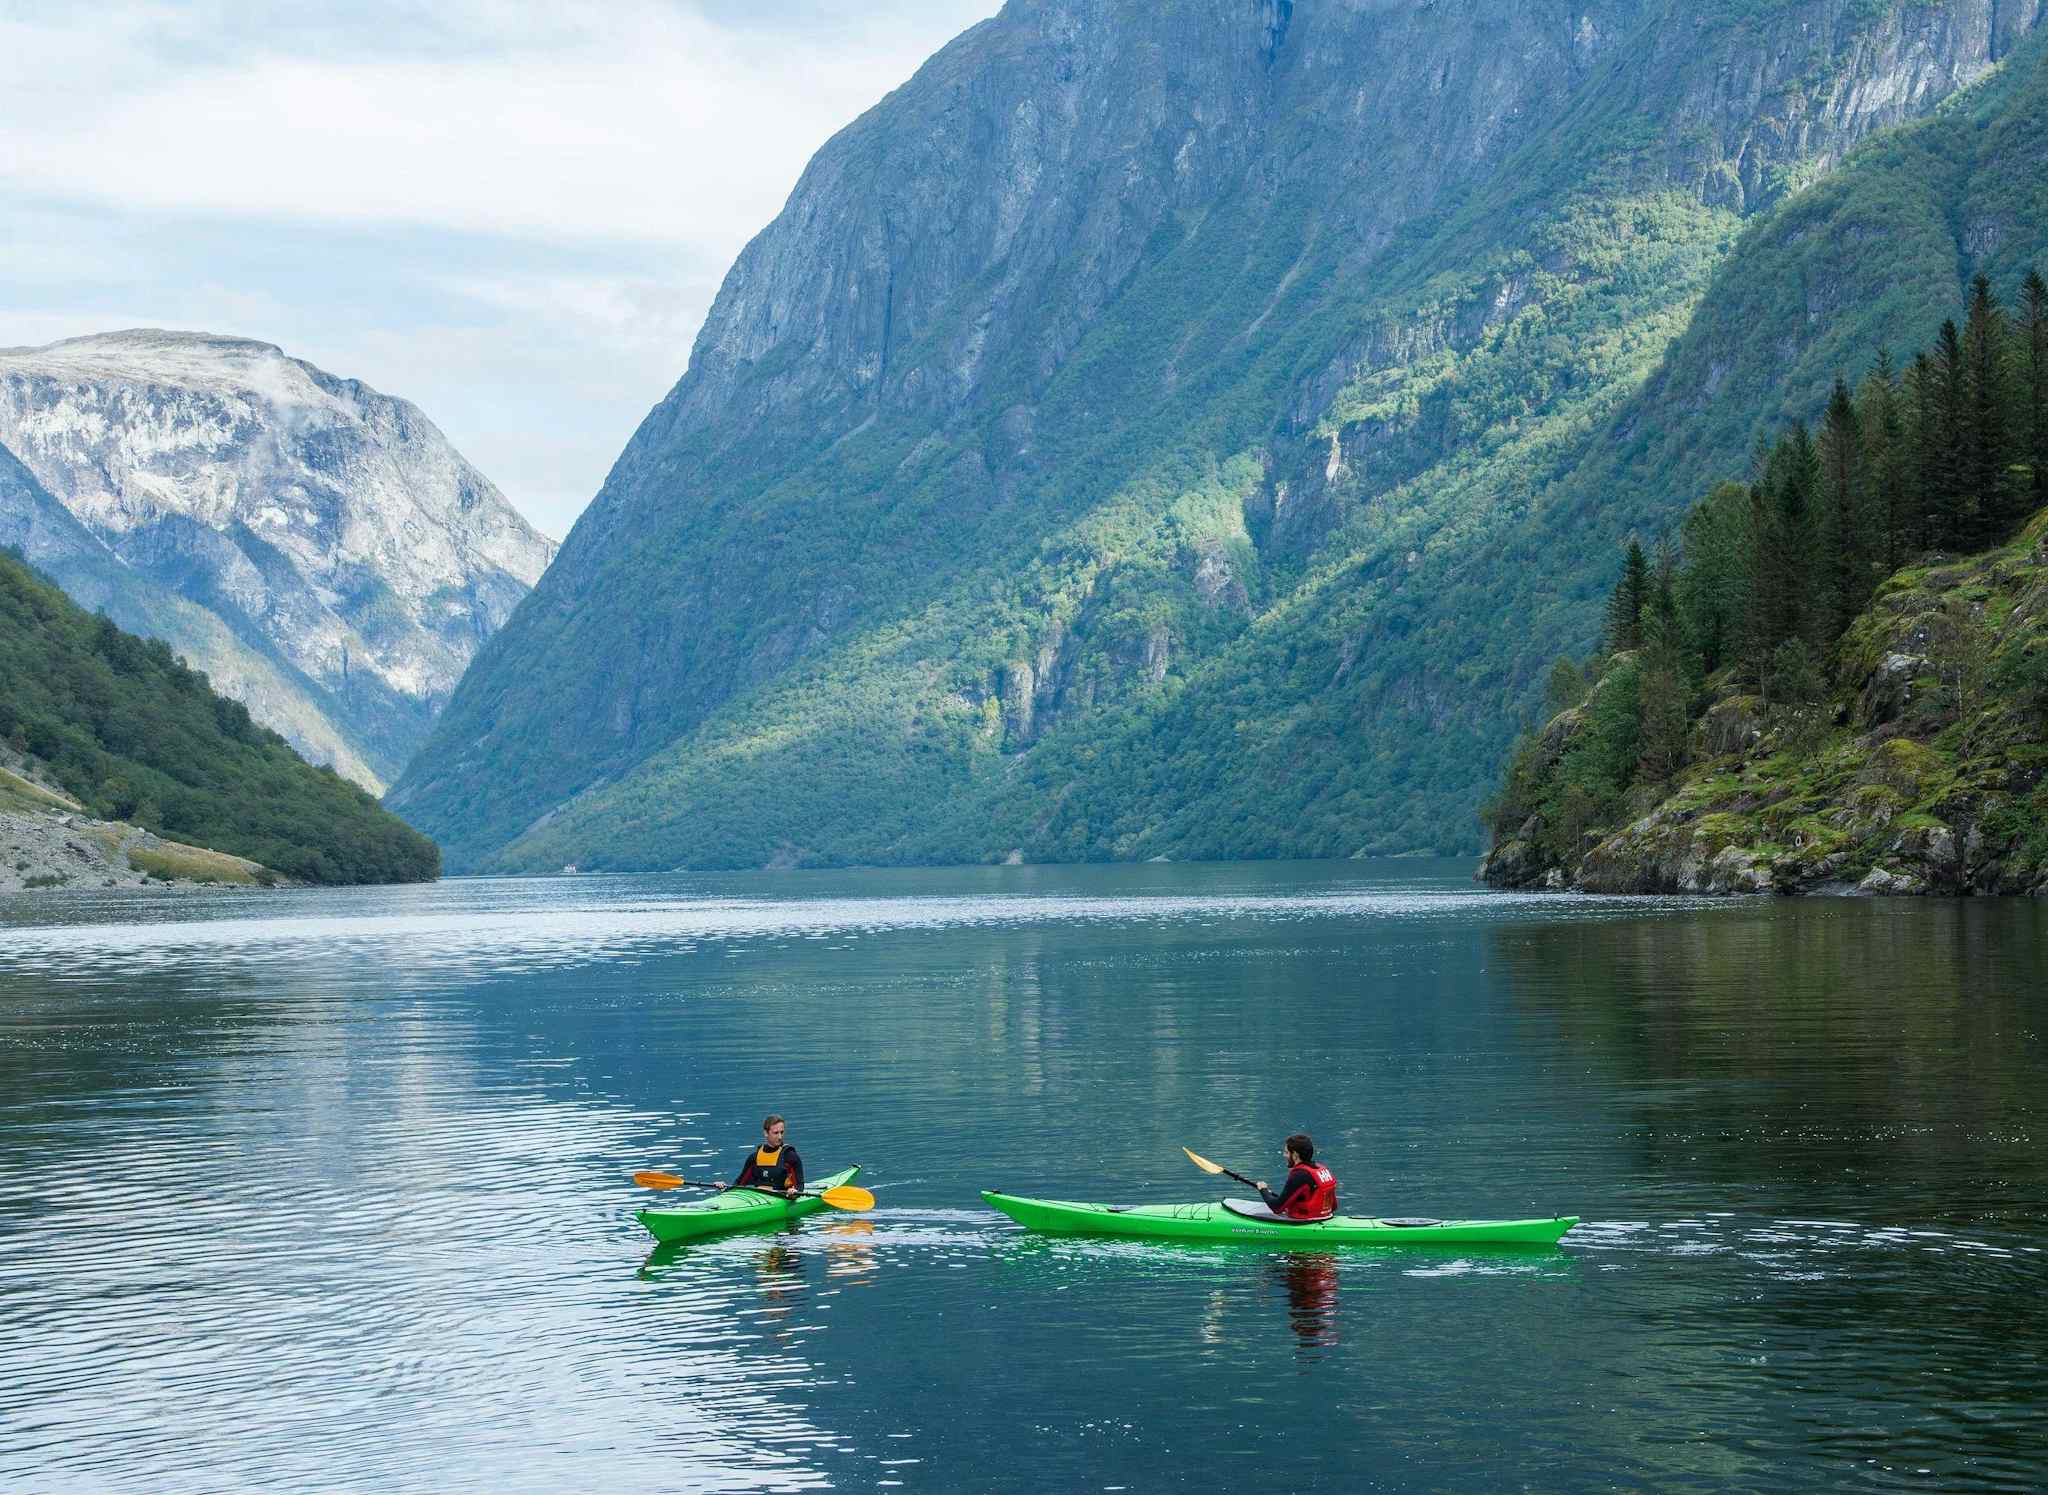 Lofoten Kayak Norway
Host image: Pukka Travels